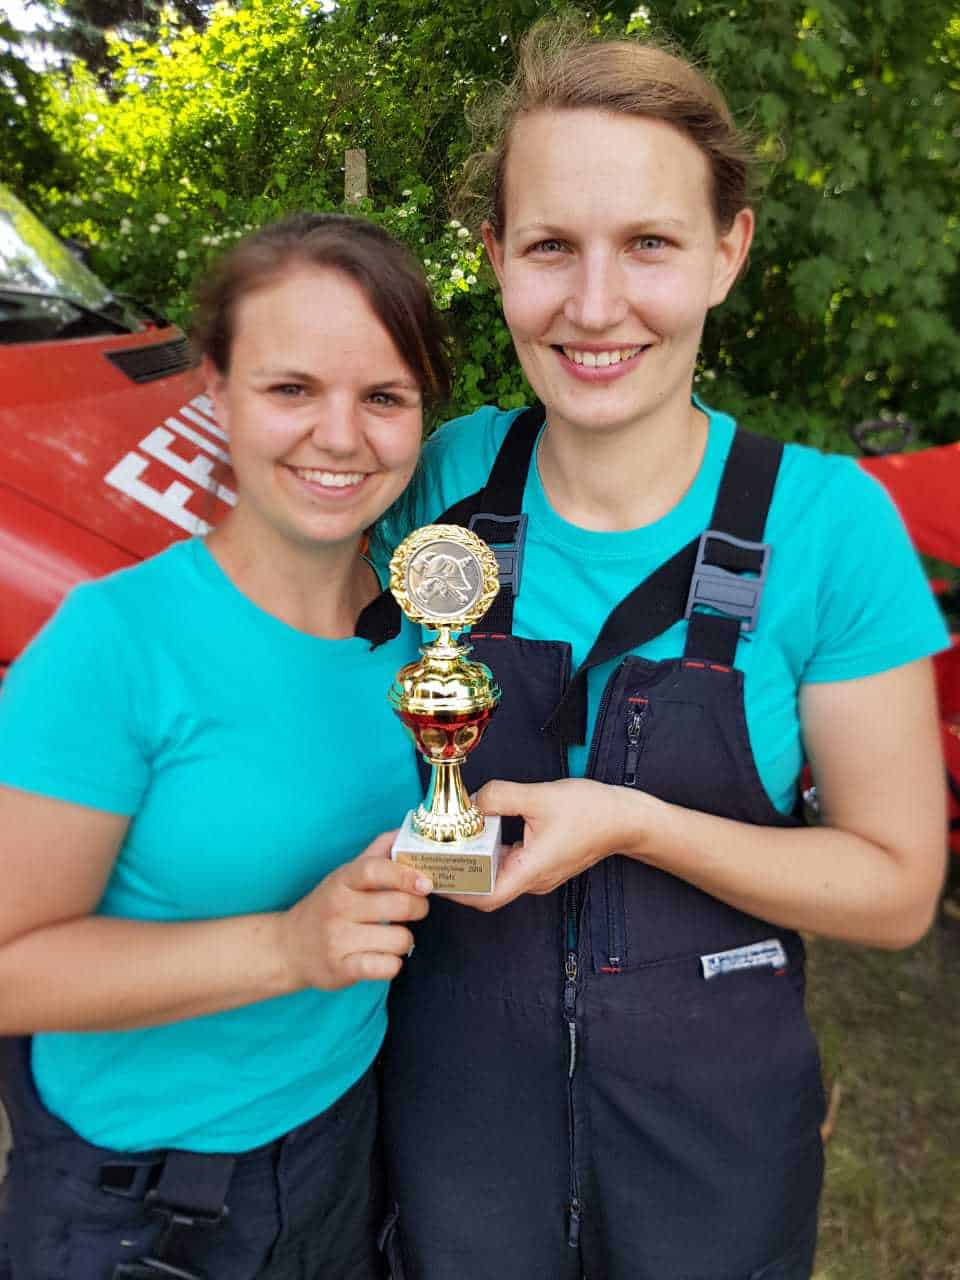 Glückwunsch zum 1.Platz - Feuerwehr - Frauenpower aus Schönow